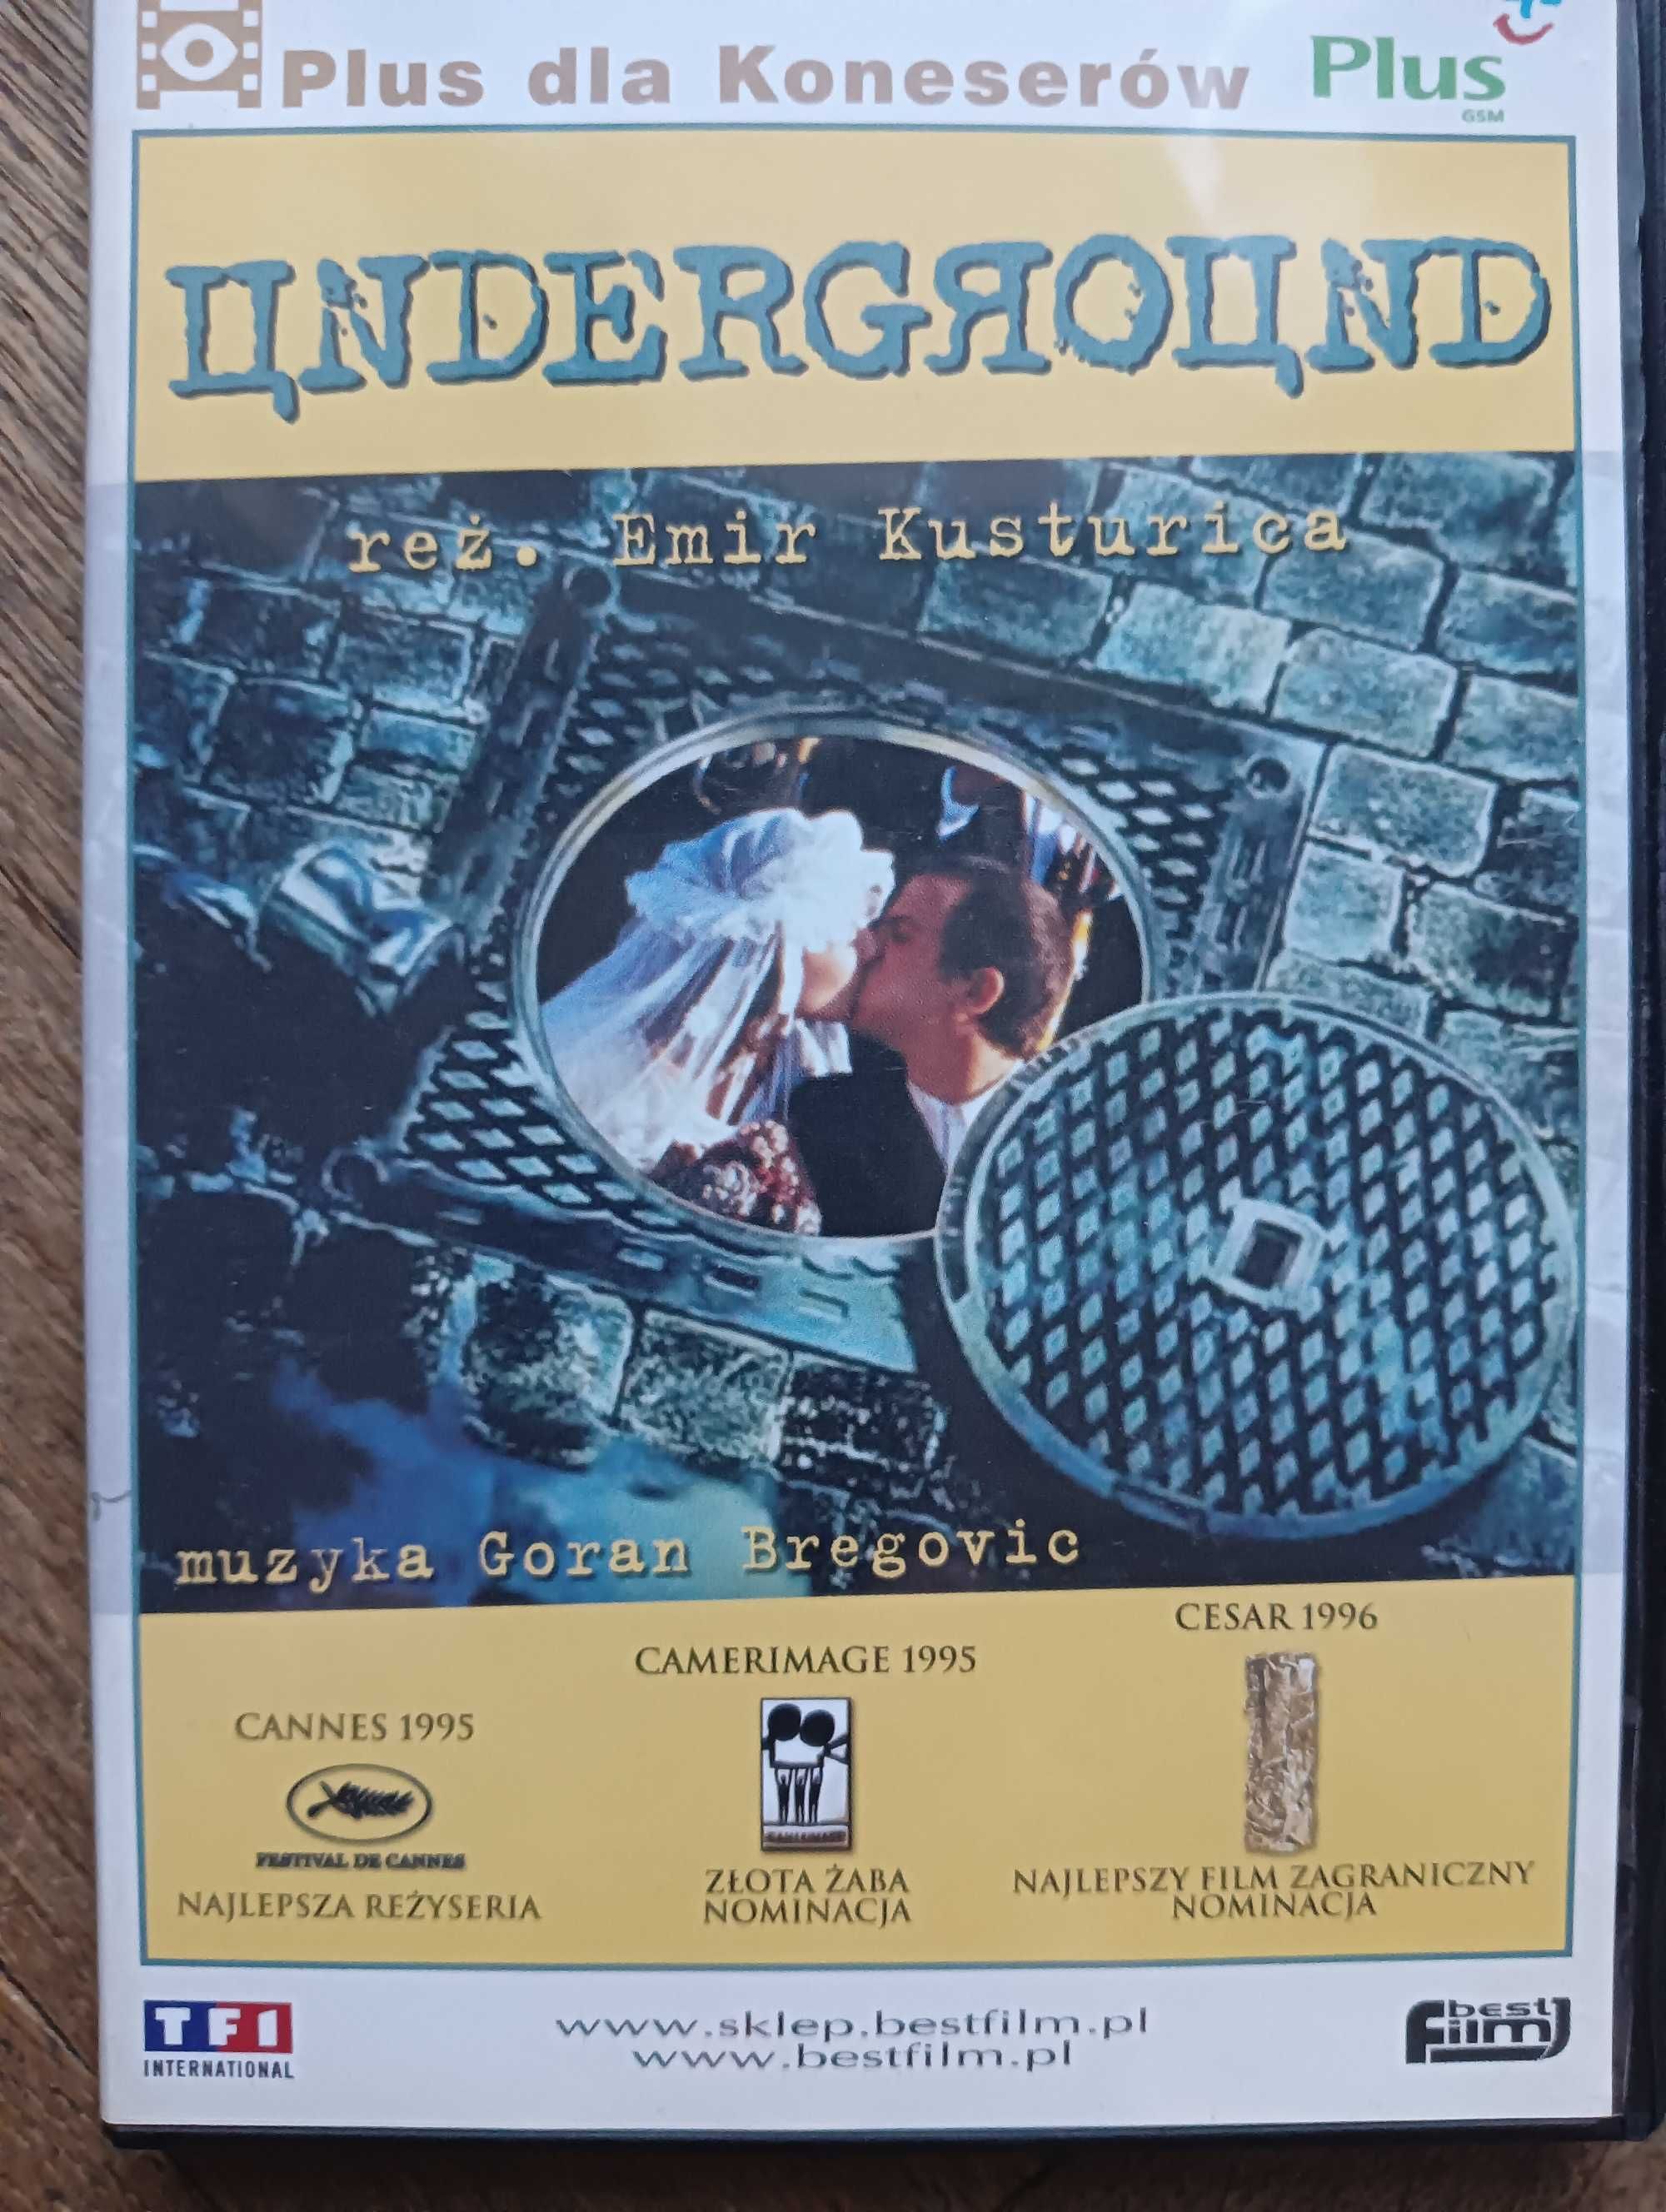 Underground film dvd